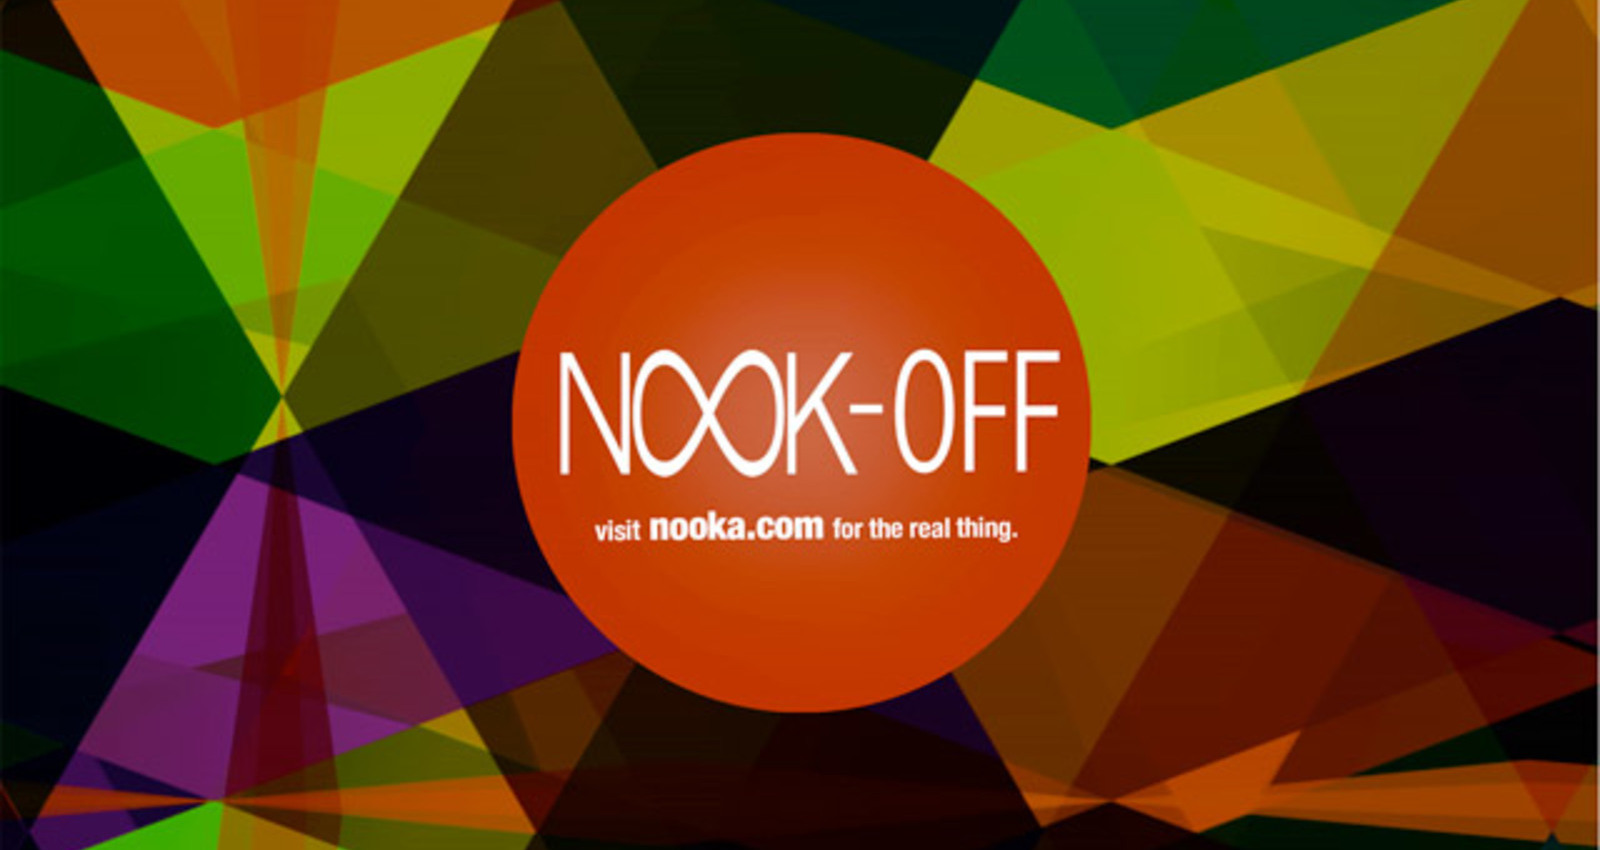 Nook-Offs